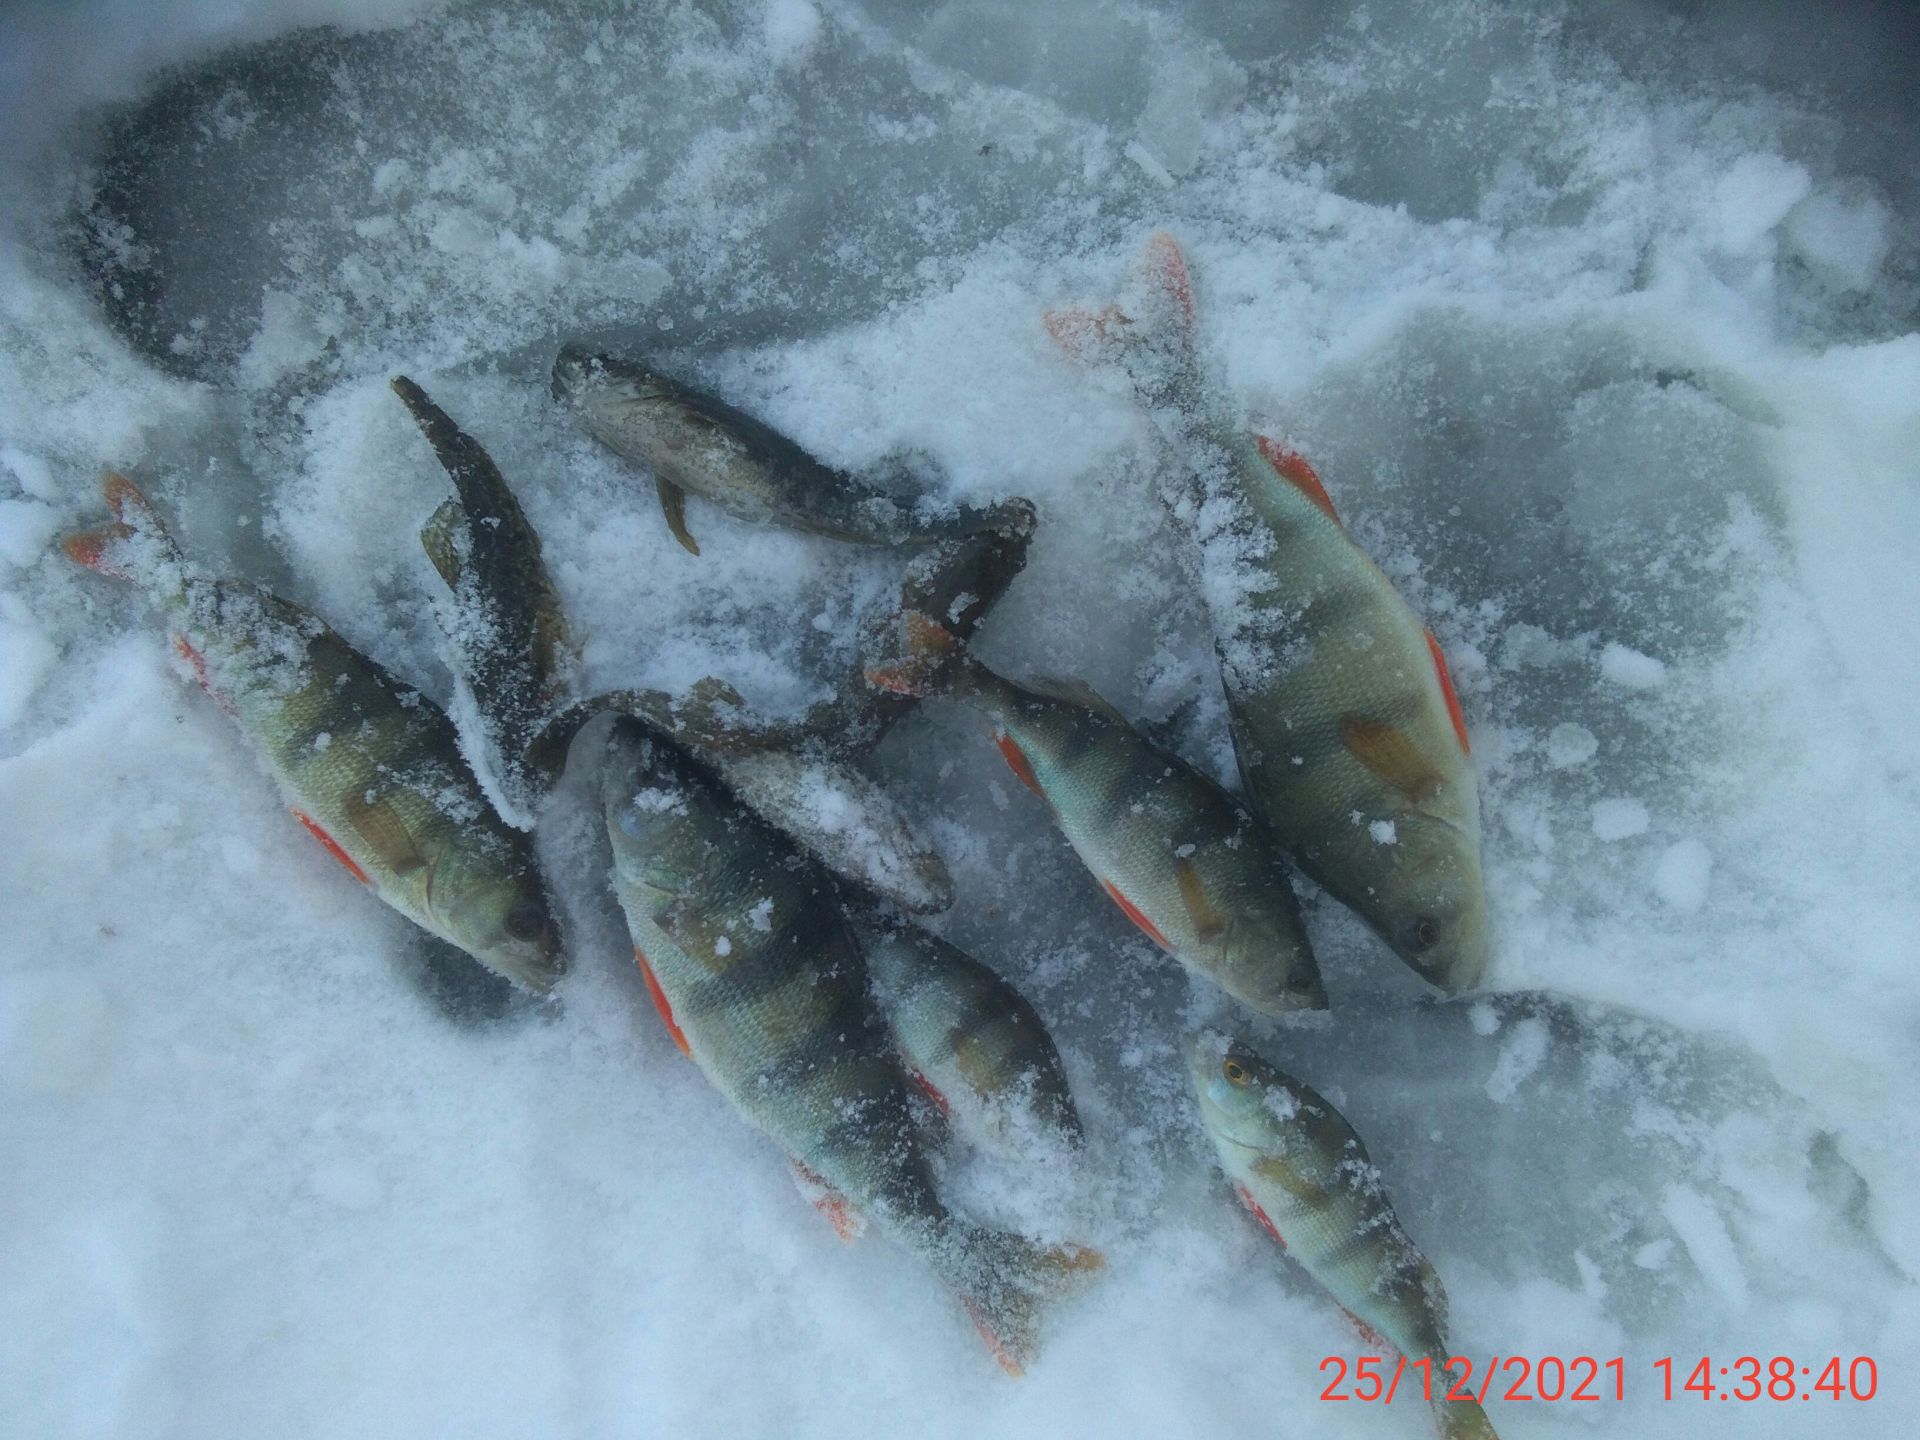  Рыбалка фото зі звіту про риболовлю  11840